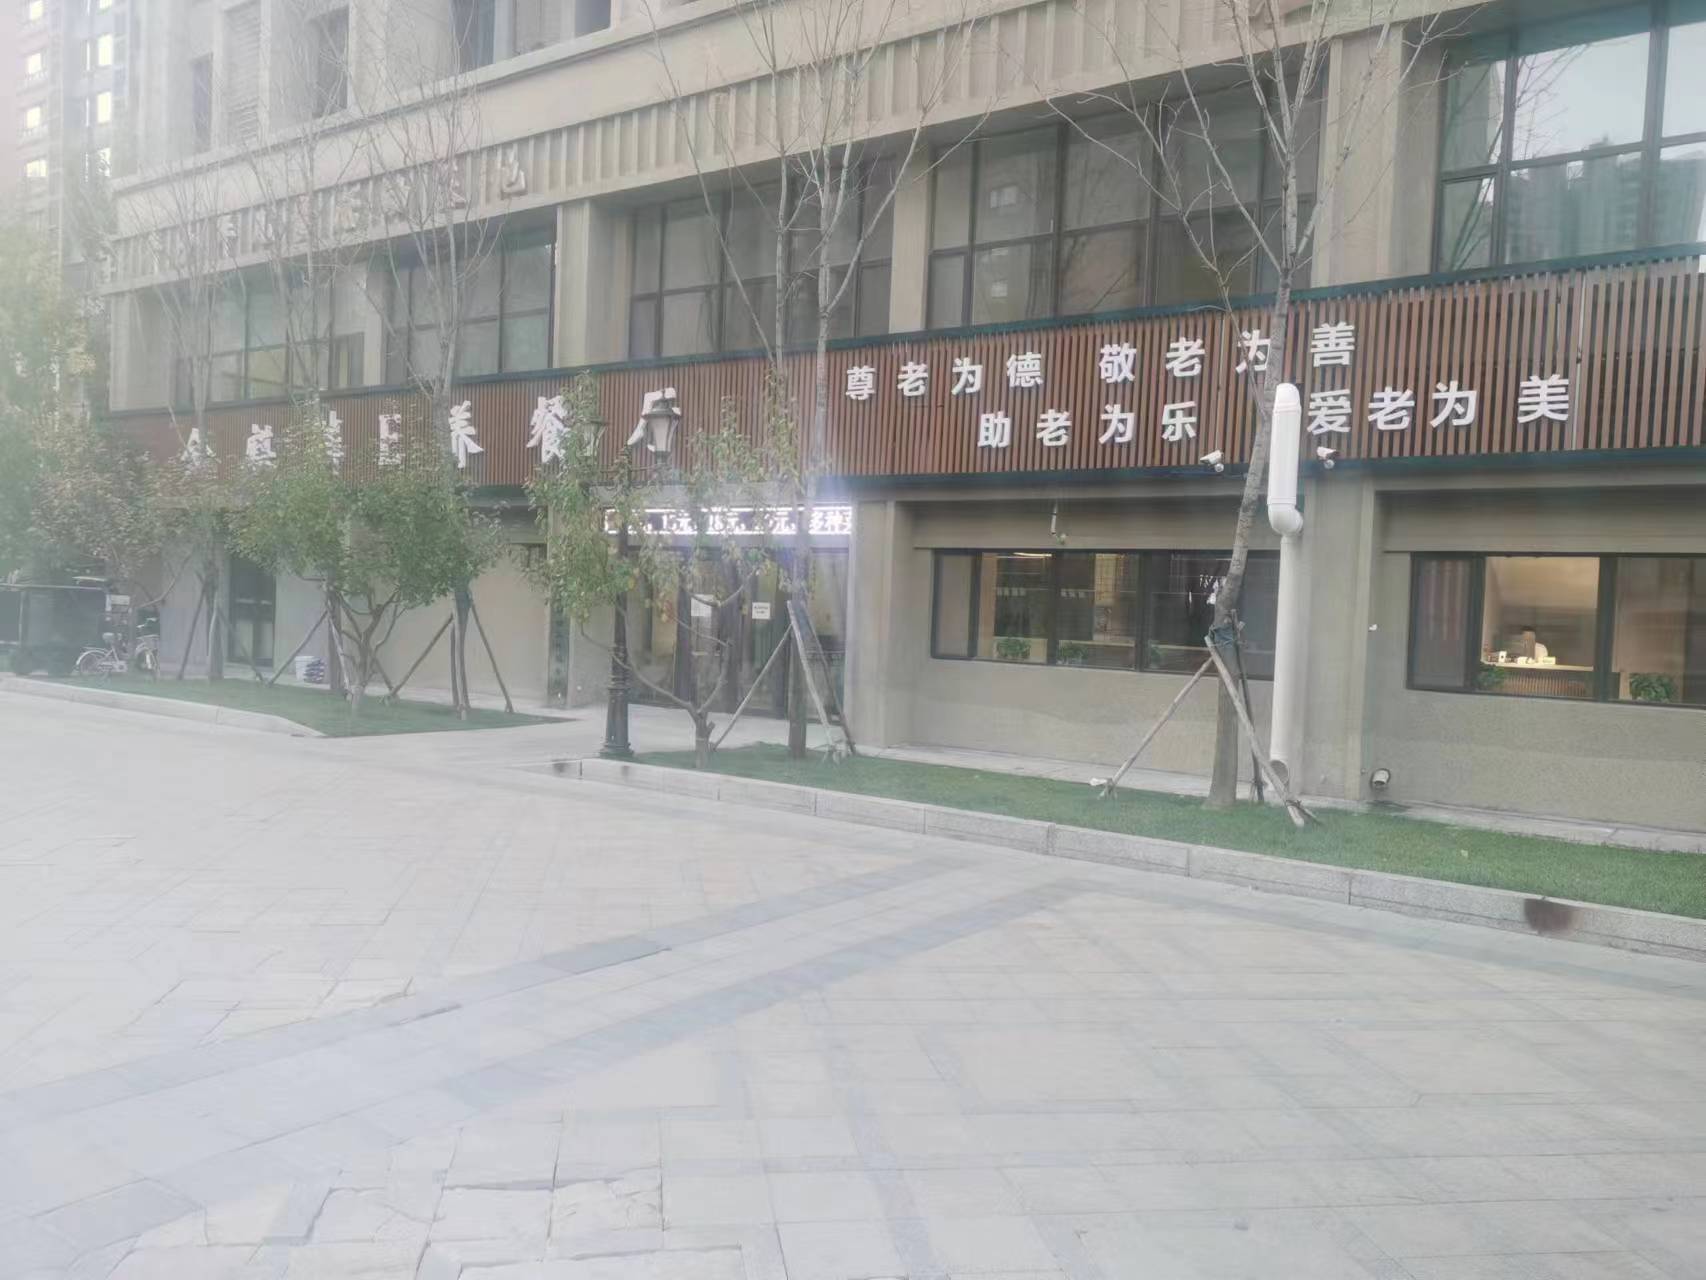 构建“15分钟养老服务圈”哈尔滨市香坊区有这些打算